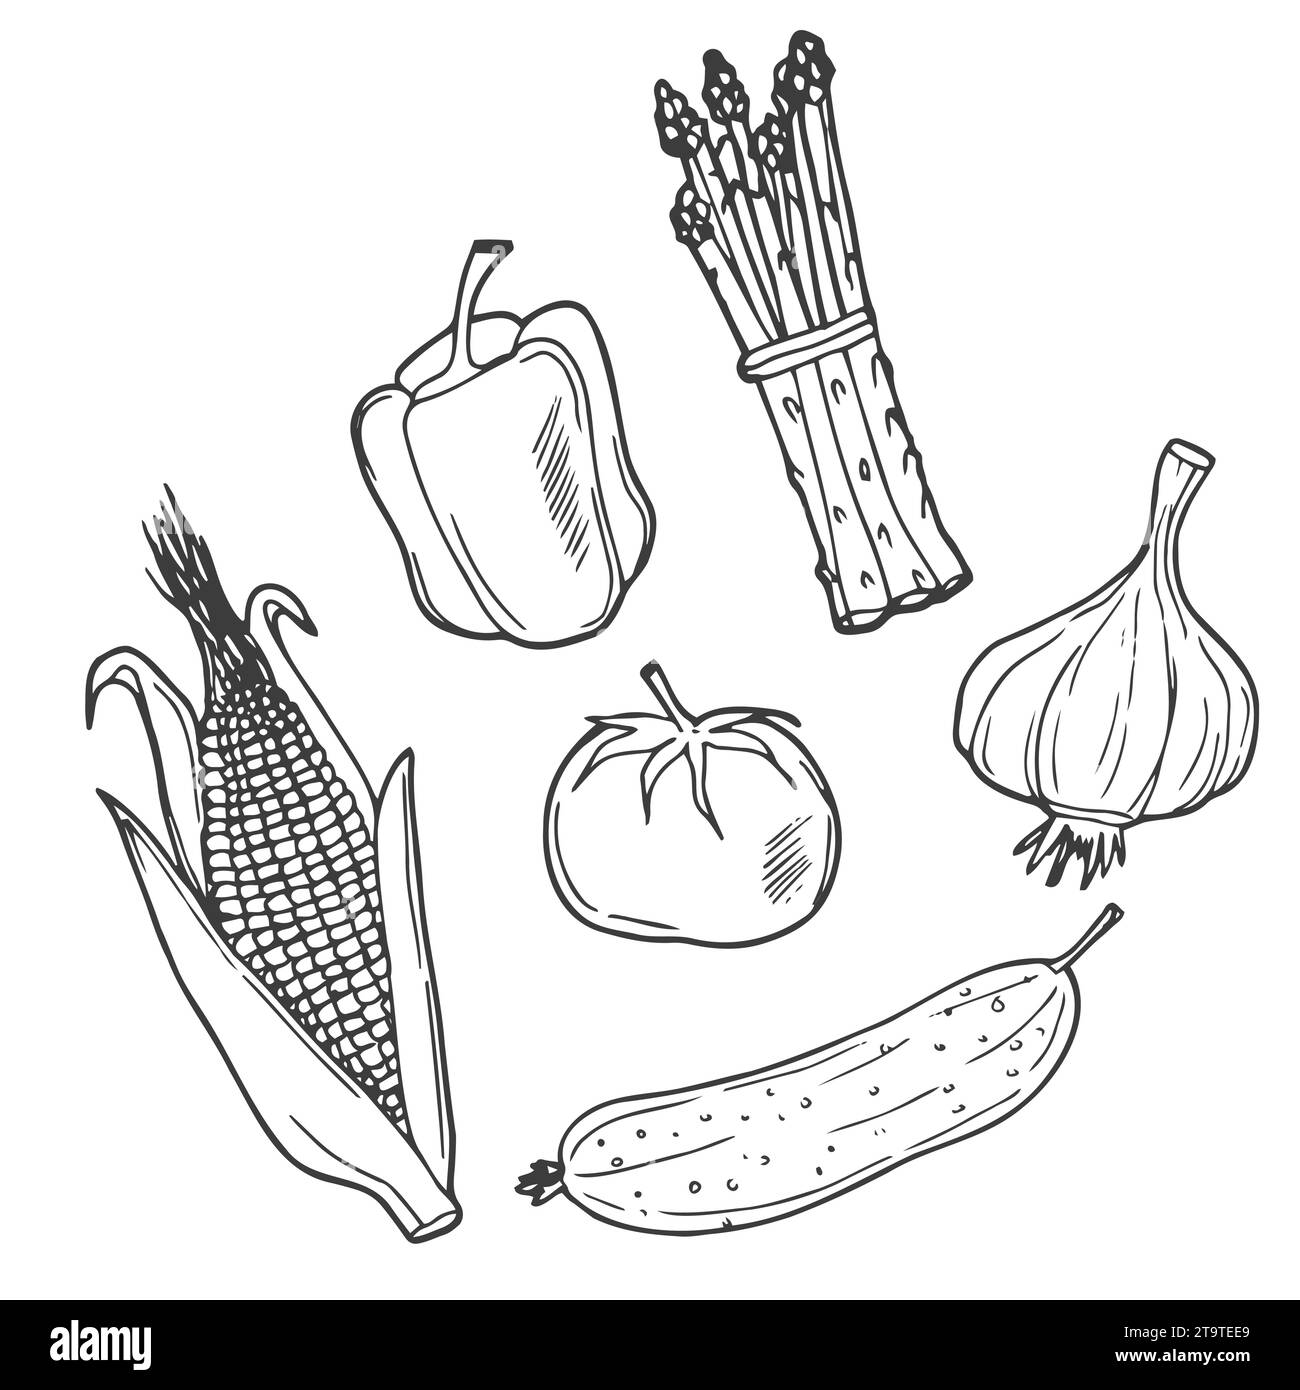 Set of vector doodle images, vegetables illustration sketch Stock Vector